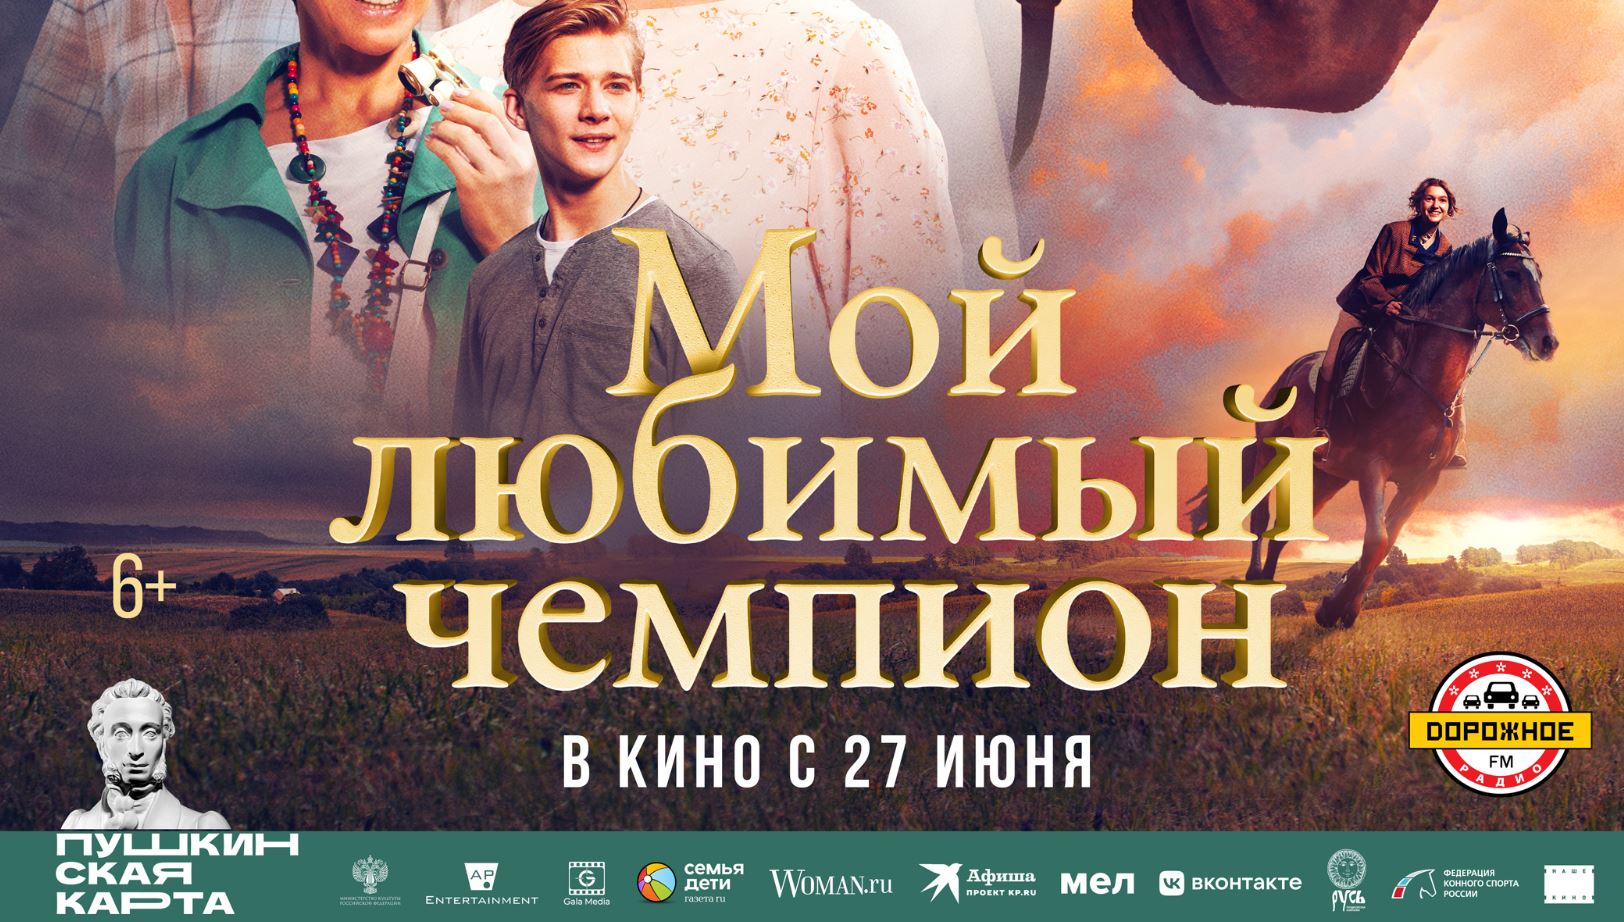 Кинозал ДК приглашает с 27 июня на фильм "Мой любимый ЧЕМПИОН" 2D, 6+, 100 мин. Пушкинская карта